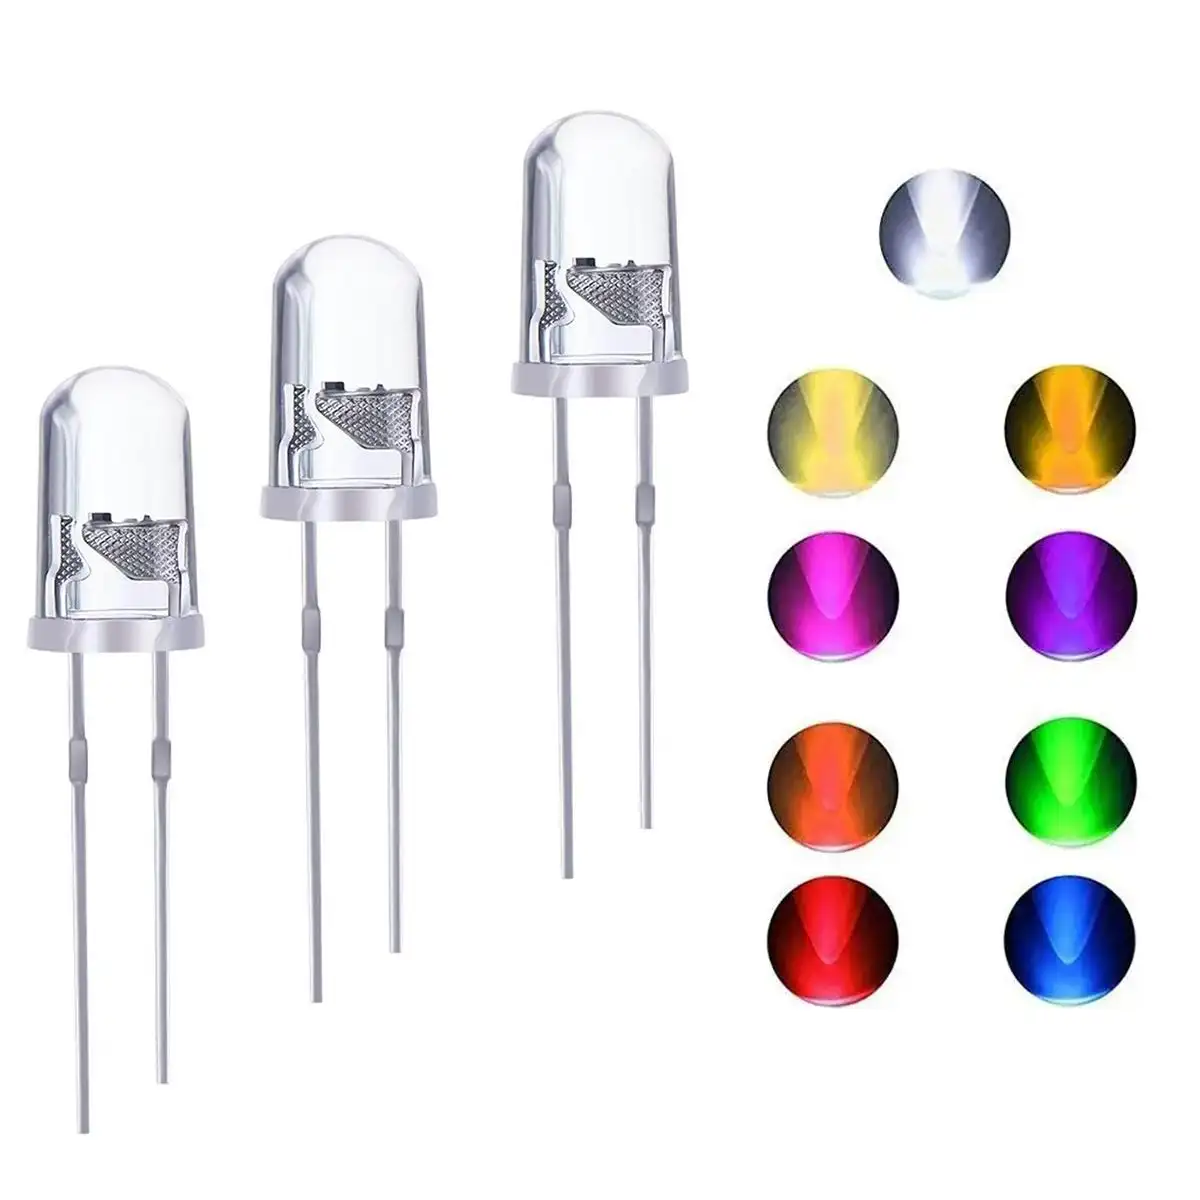 مصباح LED مستدير 3 فائق السطوع من شركة تصنيع المعدات الأصلية/ODM F3 مصباح LED مستدير مائي أخضر/أصفر/أزرق/أبيض/أحمر